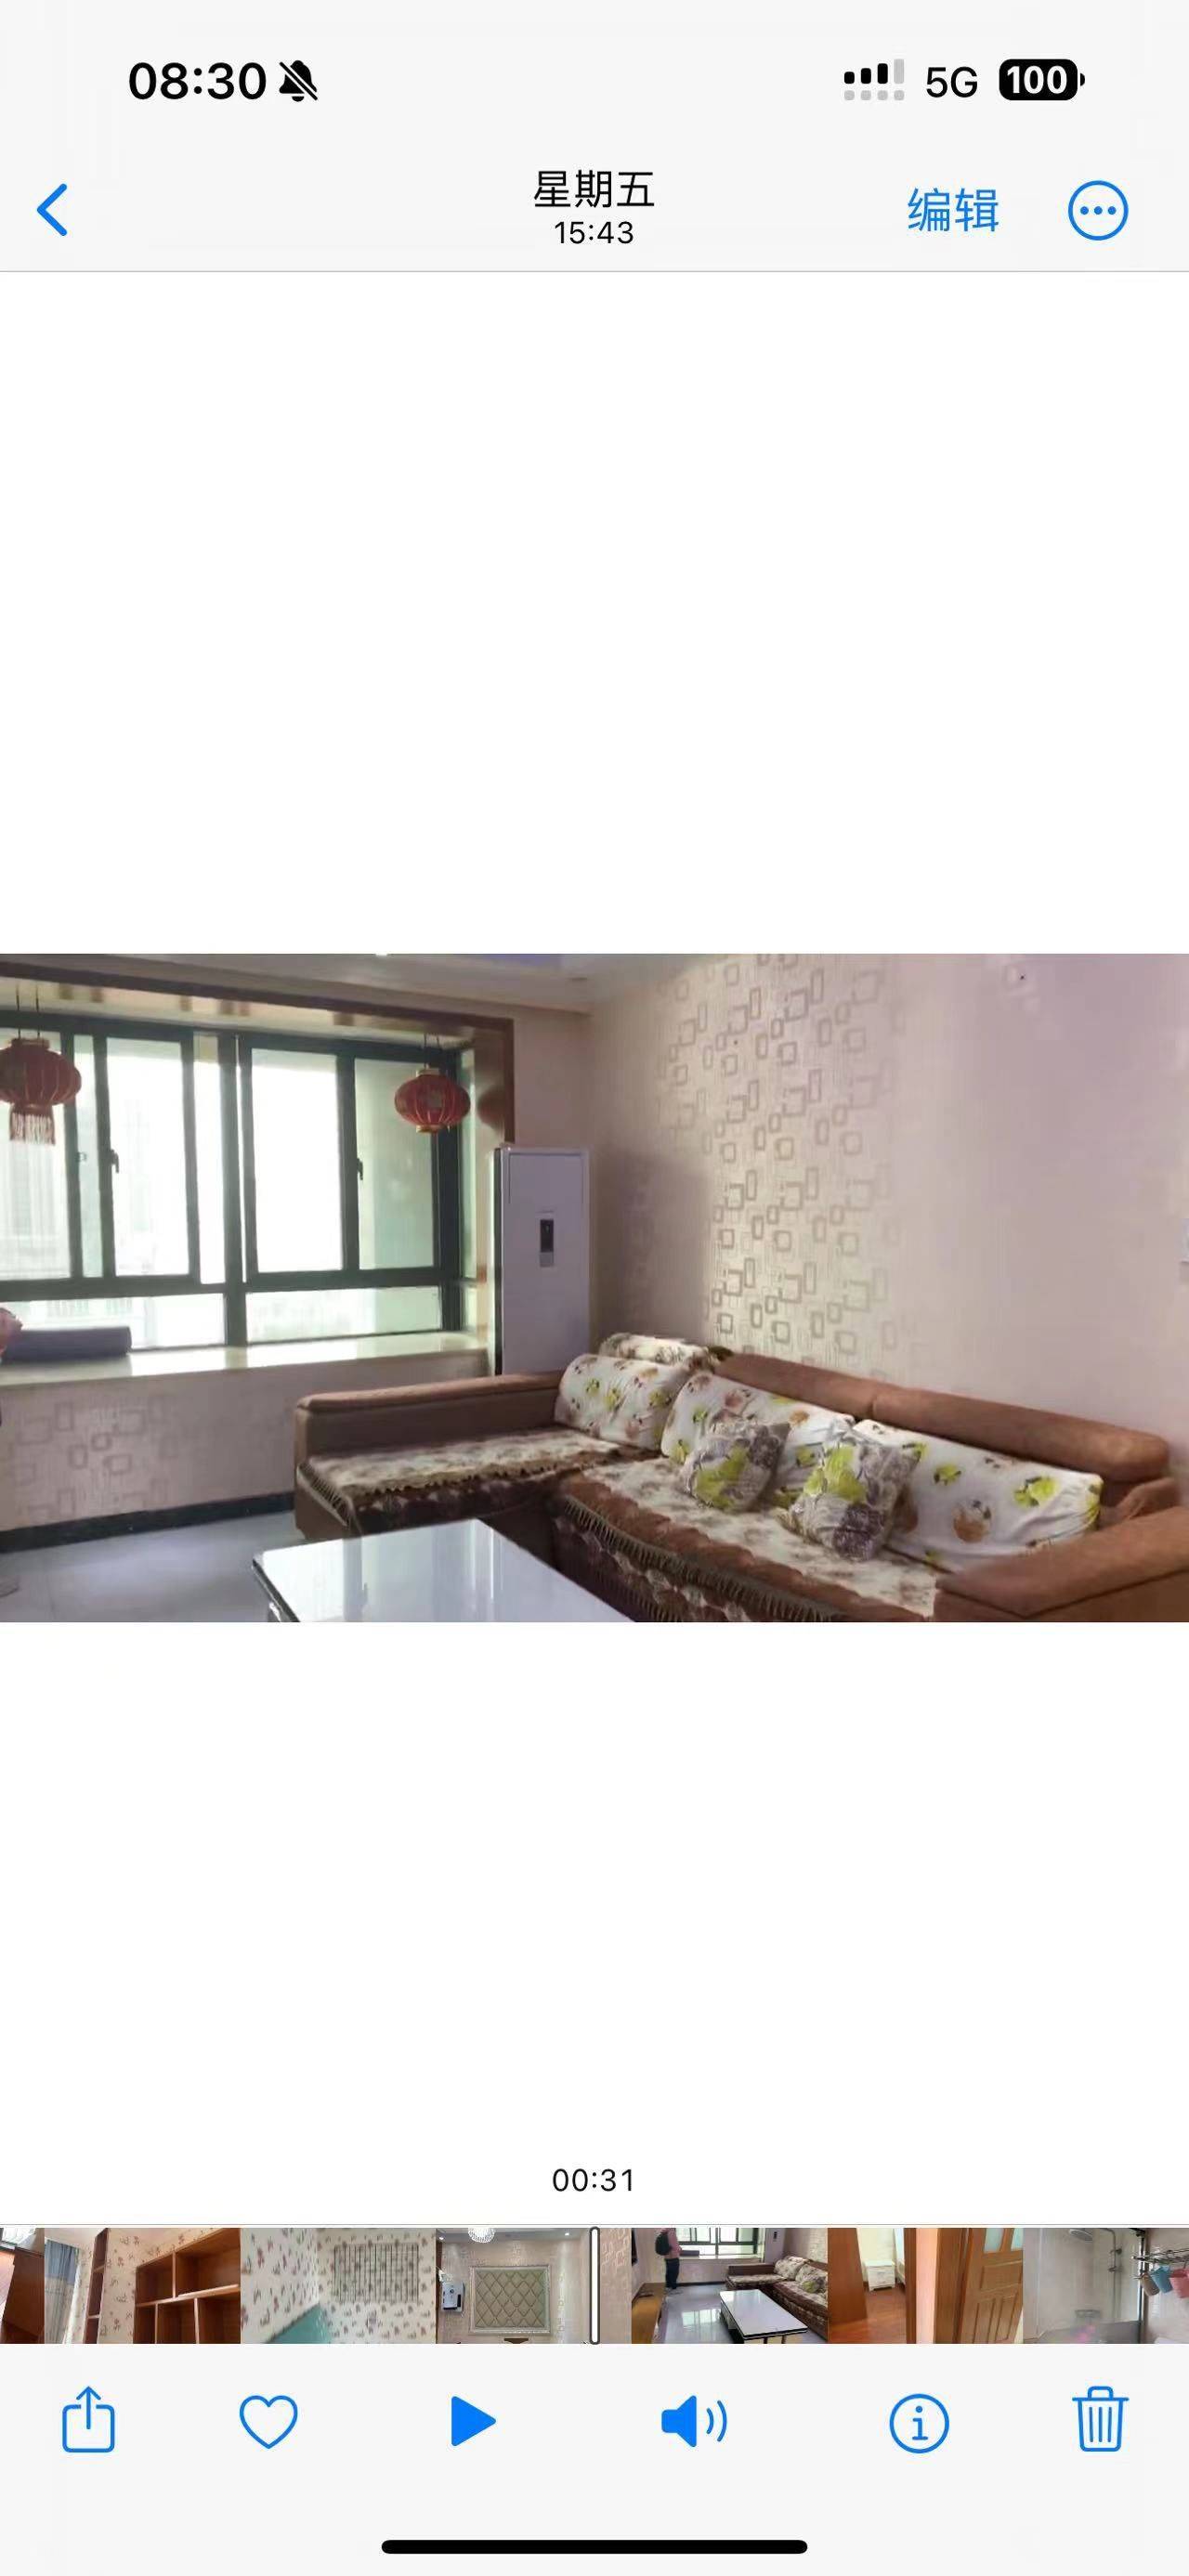 Hangzhou-Qiantang-Cozy Home,No Gender Limit